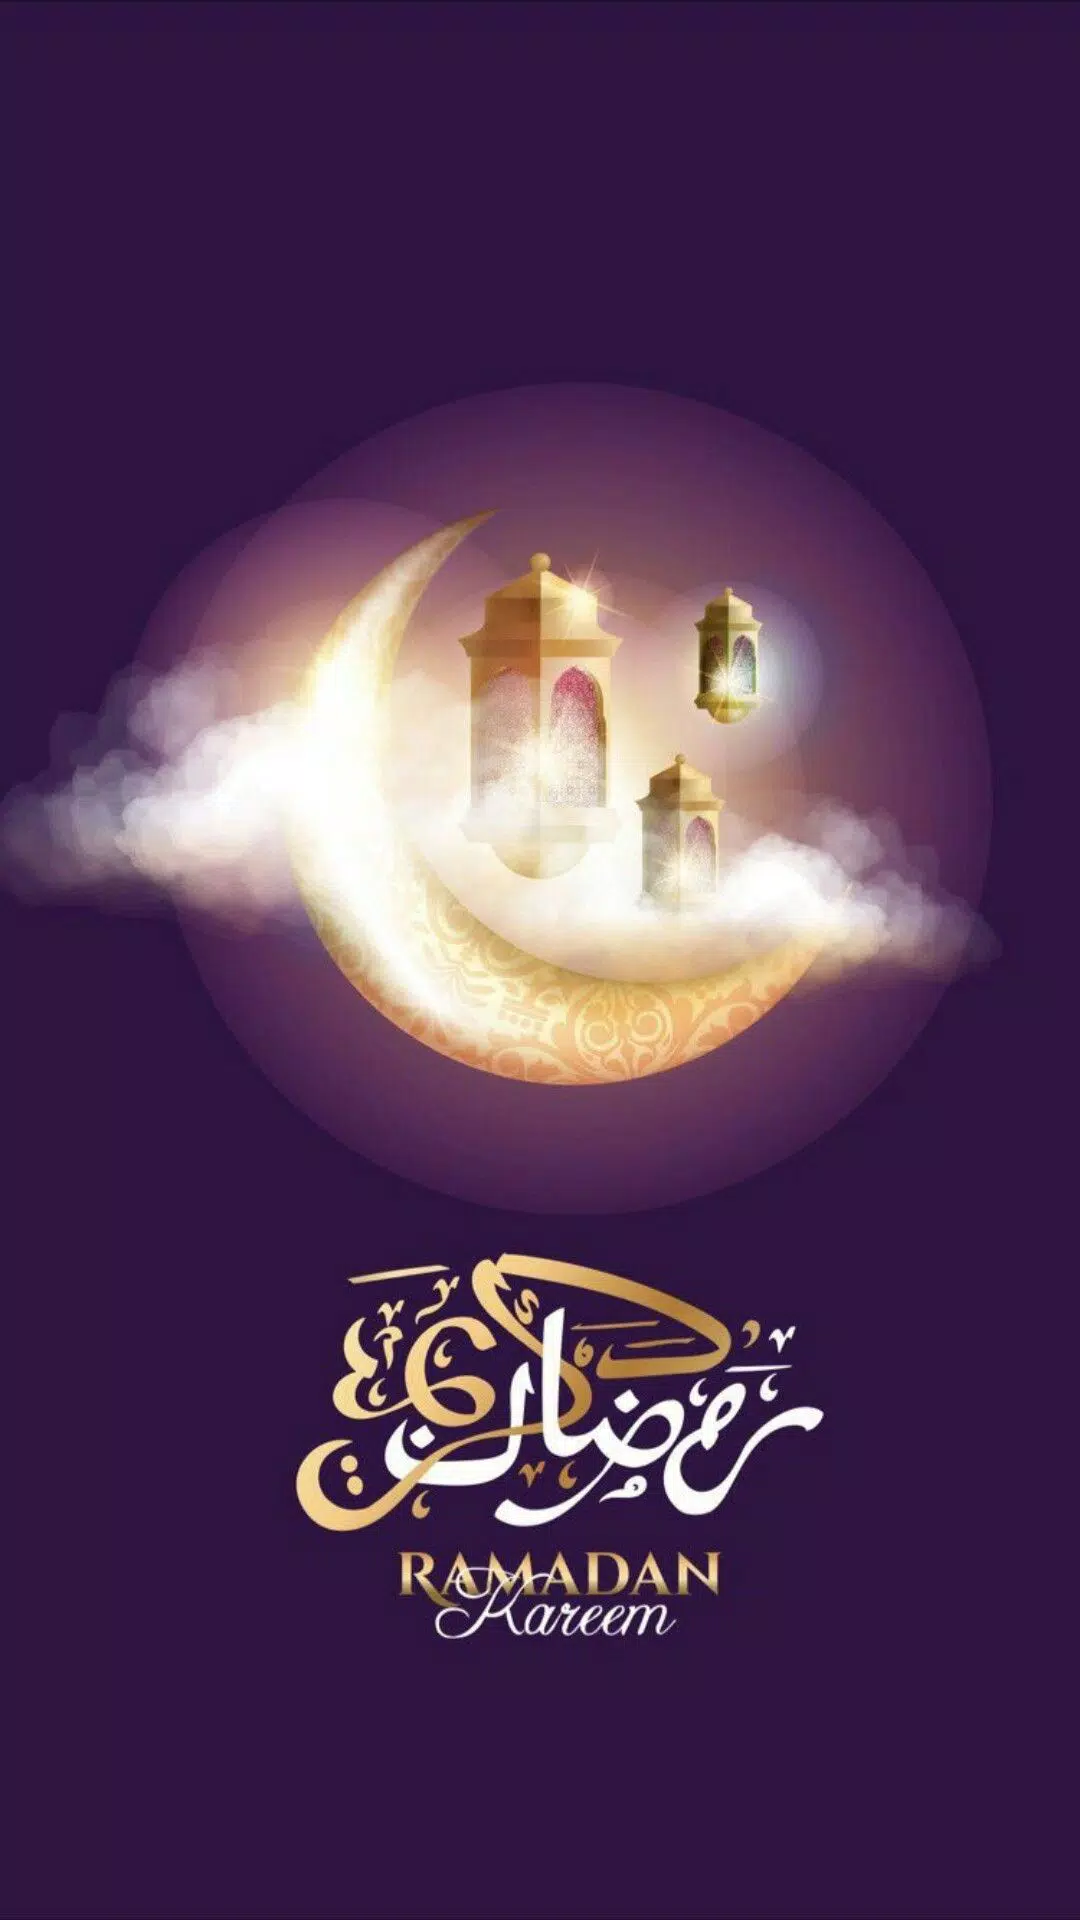 Background Feast of Ramadan Wallpaper